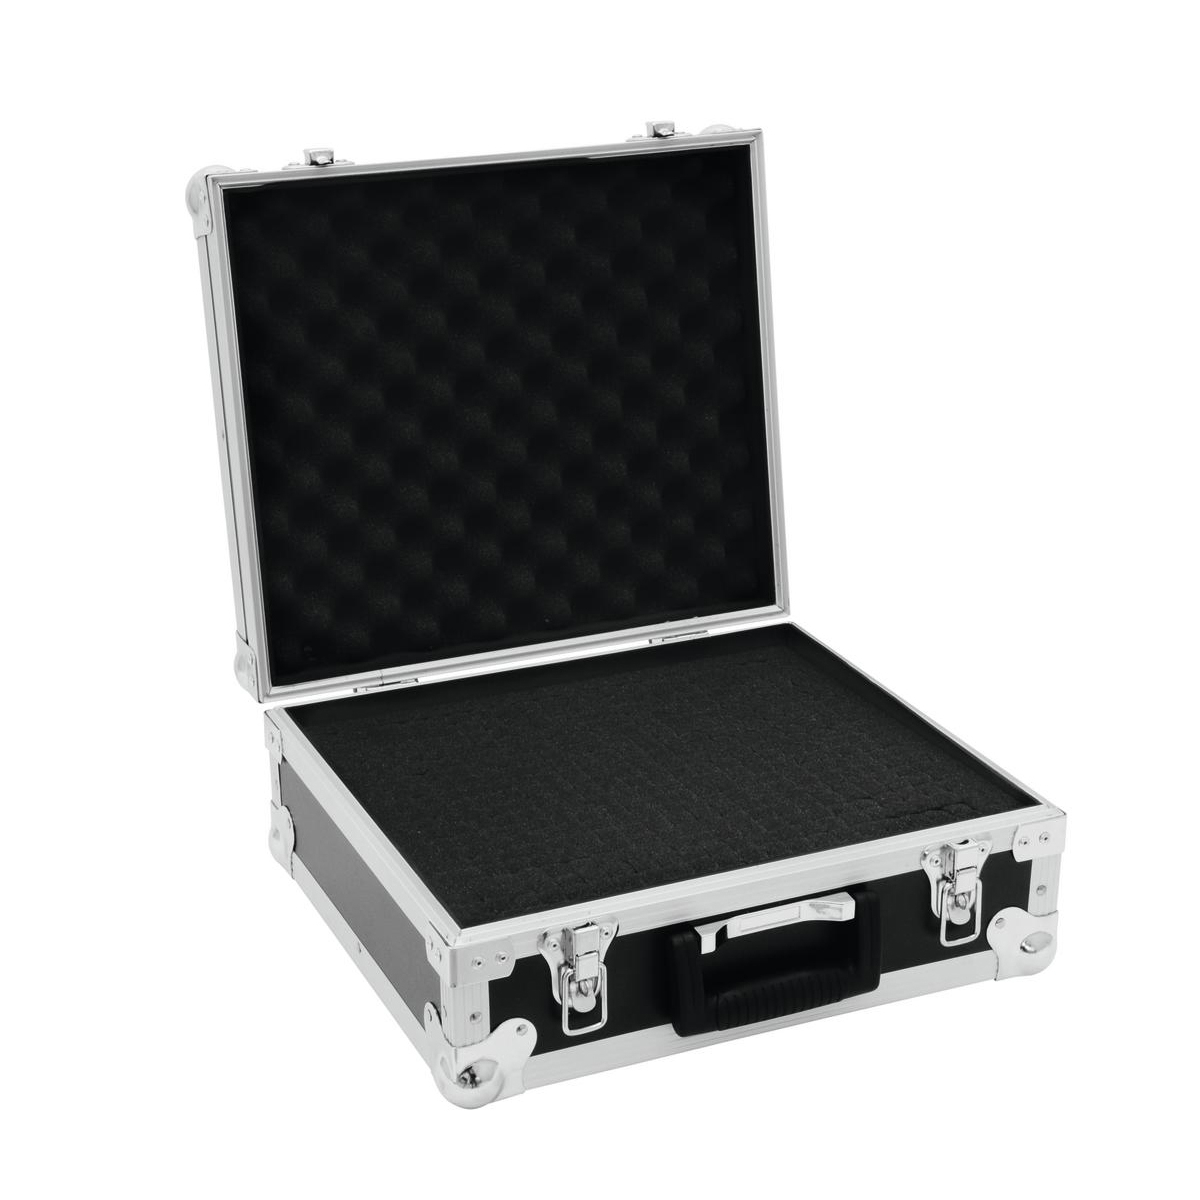 ROADINGER Universal-Koffer-Case FOAM 3 Flightcase mit flexibler Schaumeinlage Innenmaße: 380x325x110mm